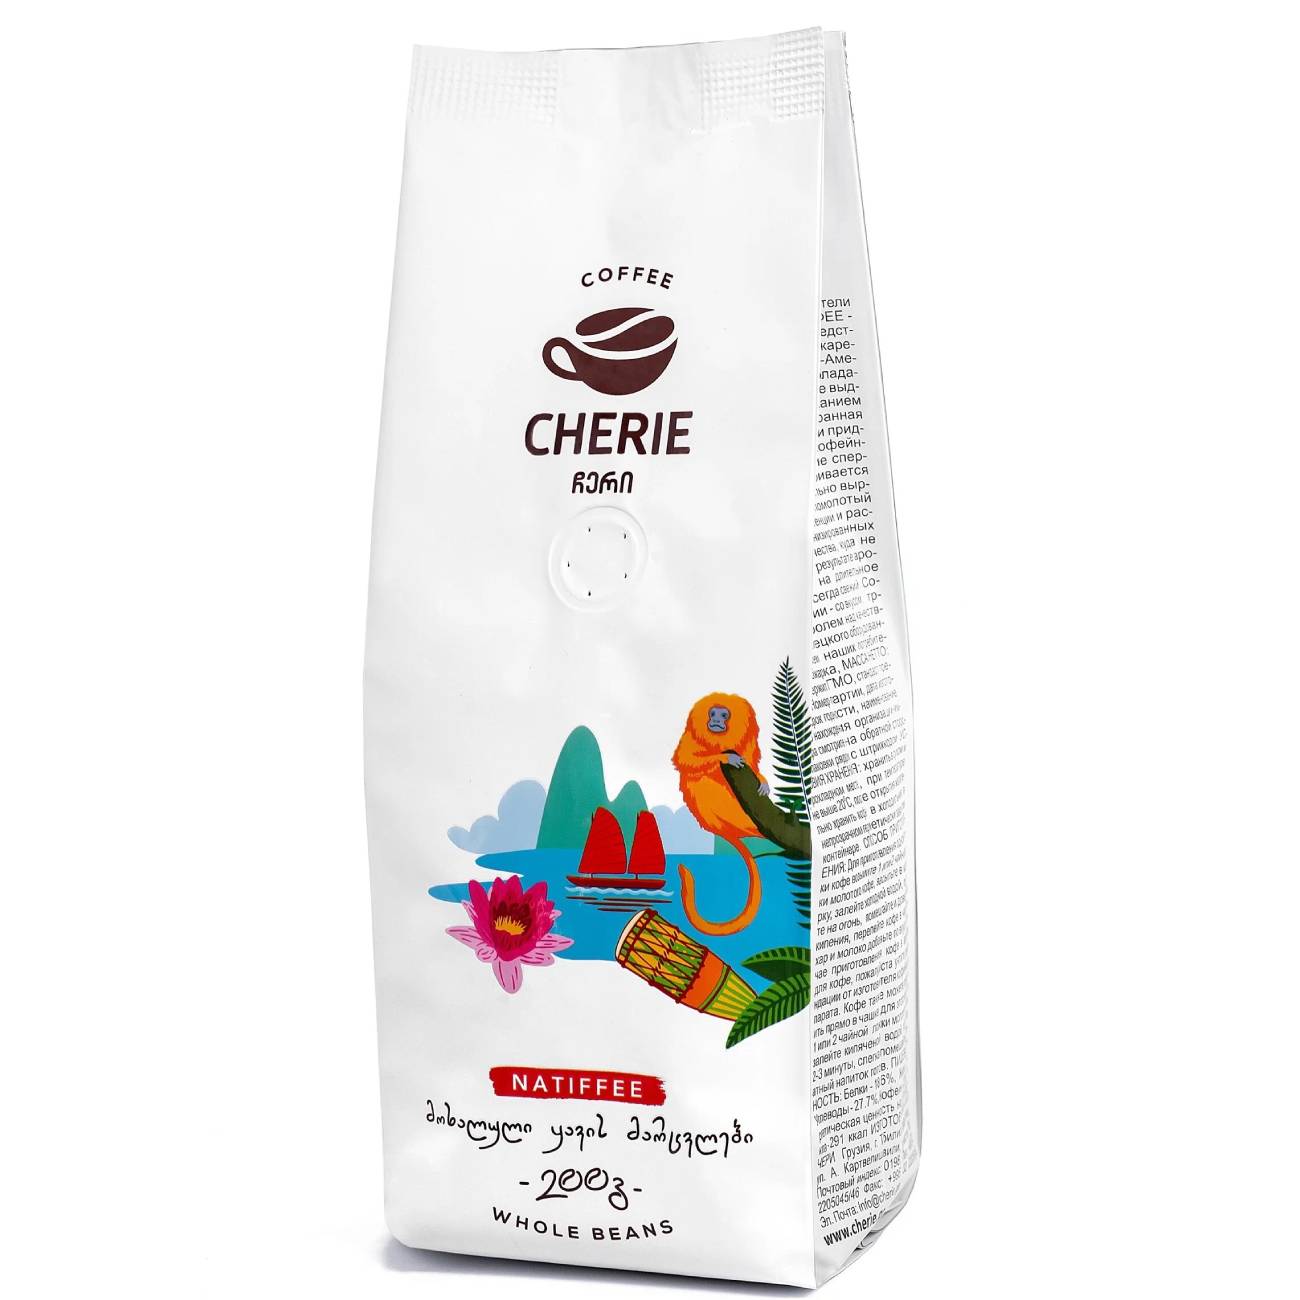 Кофе Cherie зерно натиффее, 200 г кофе д аффари 850 г коломбия зерно